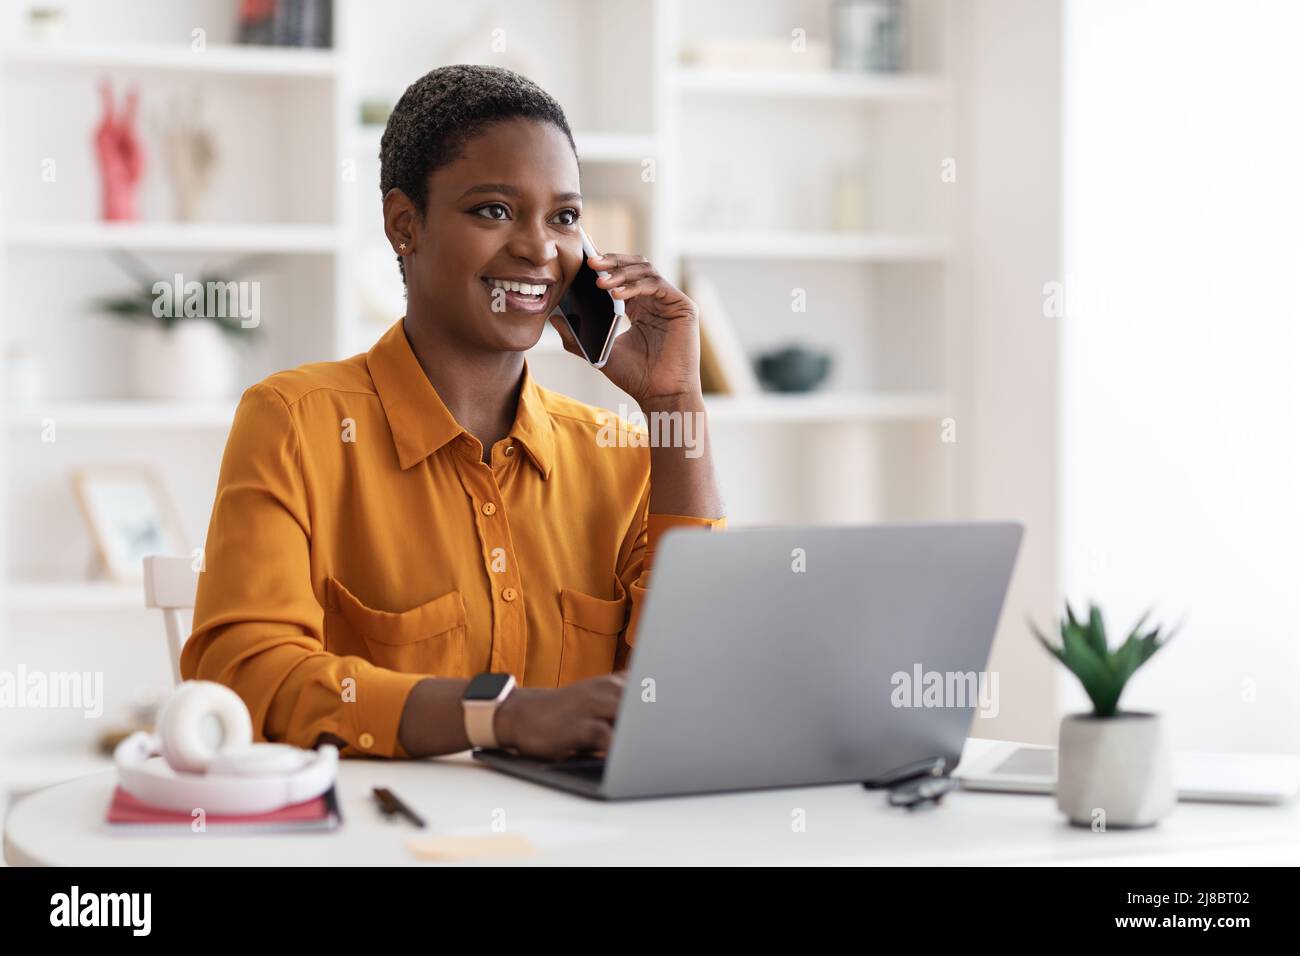 Femme noire assise à une table avec un ordinateur portable, ayant une conversation téléphonique Banque D'Images